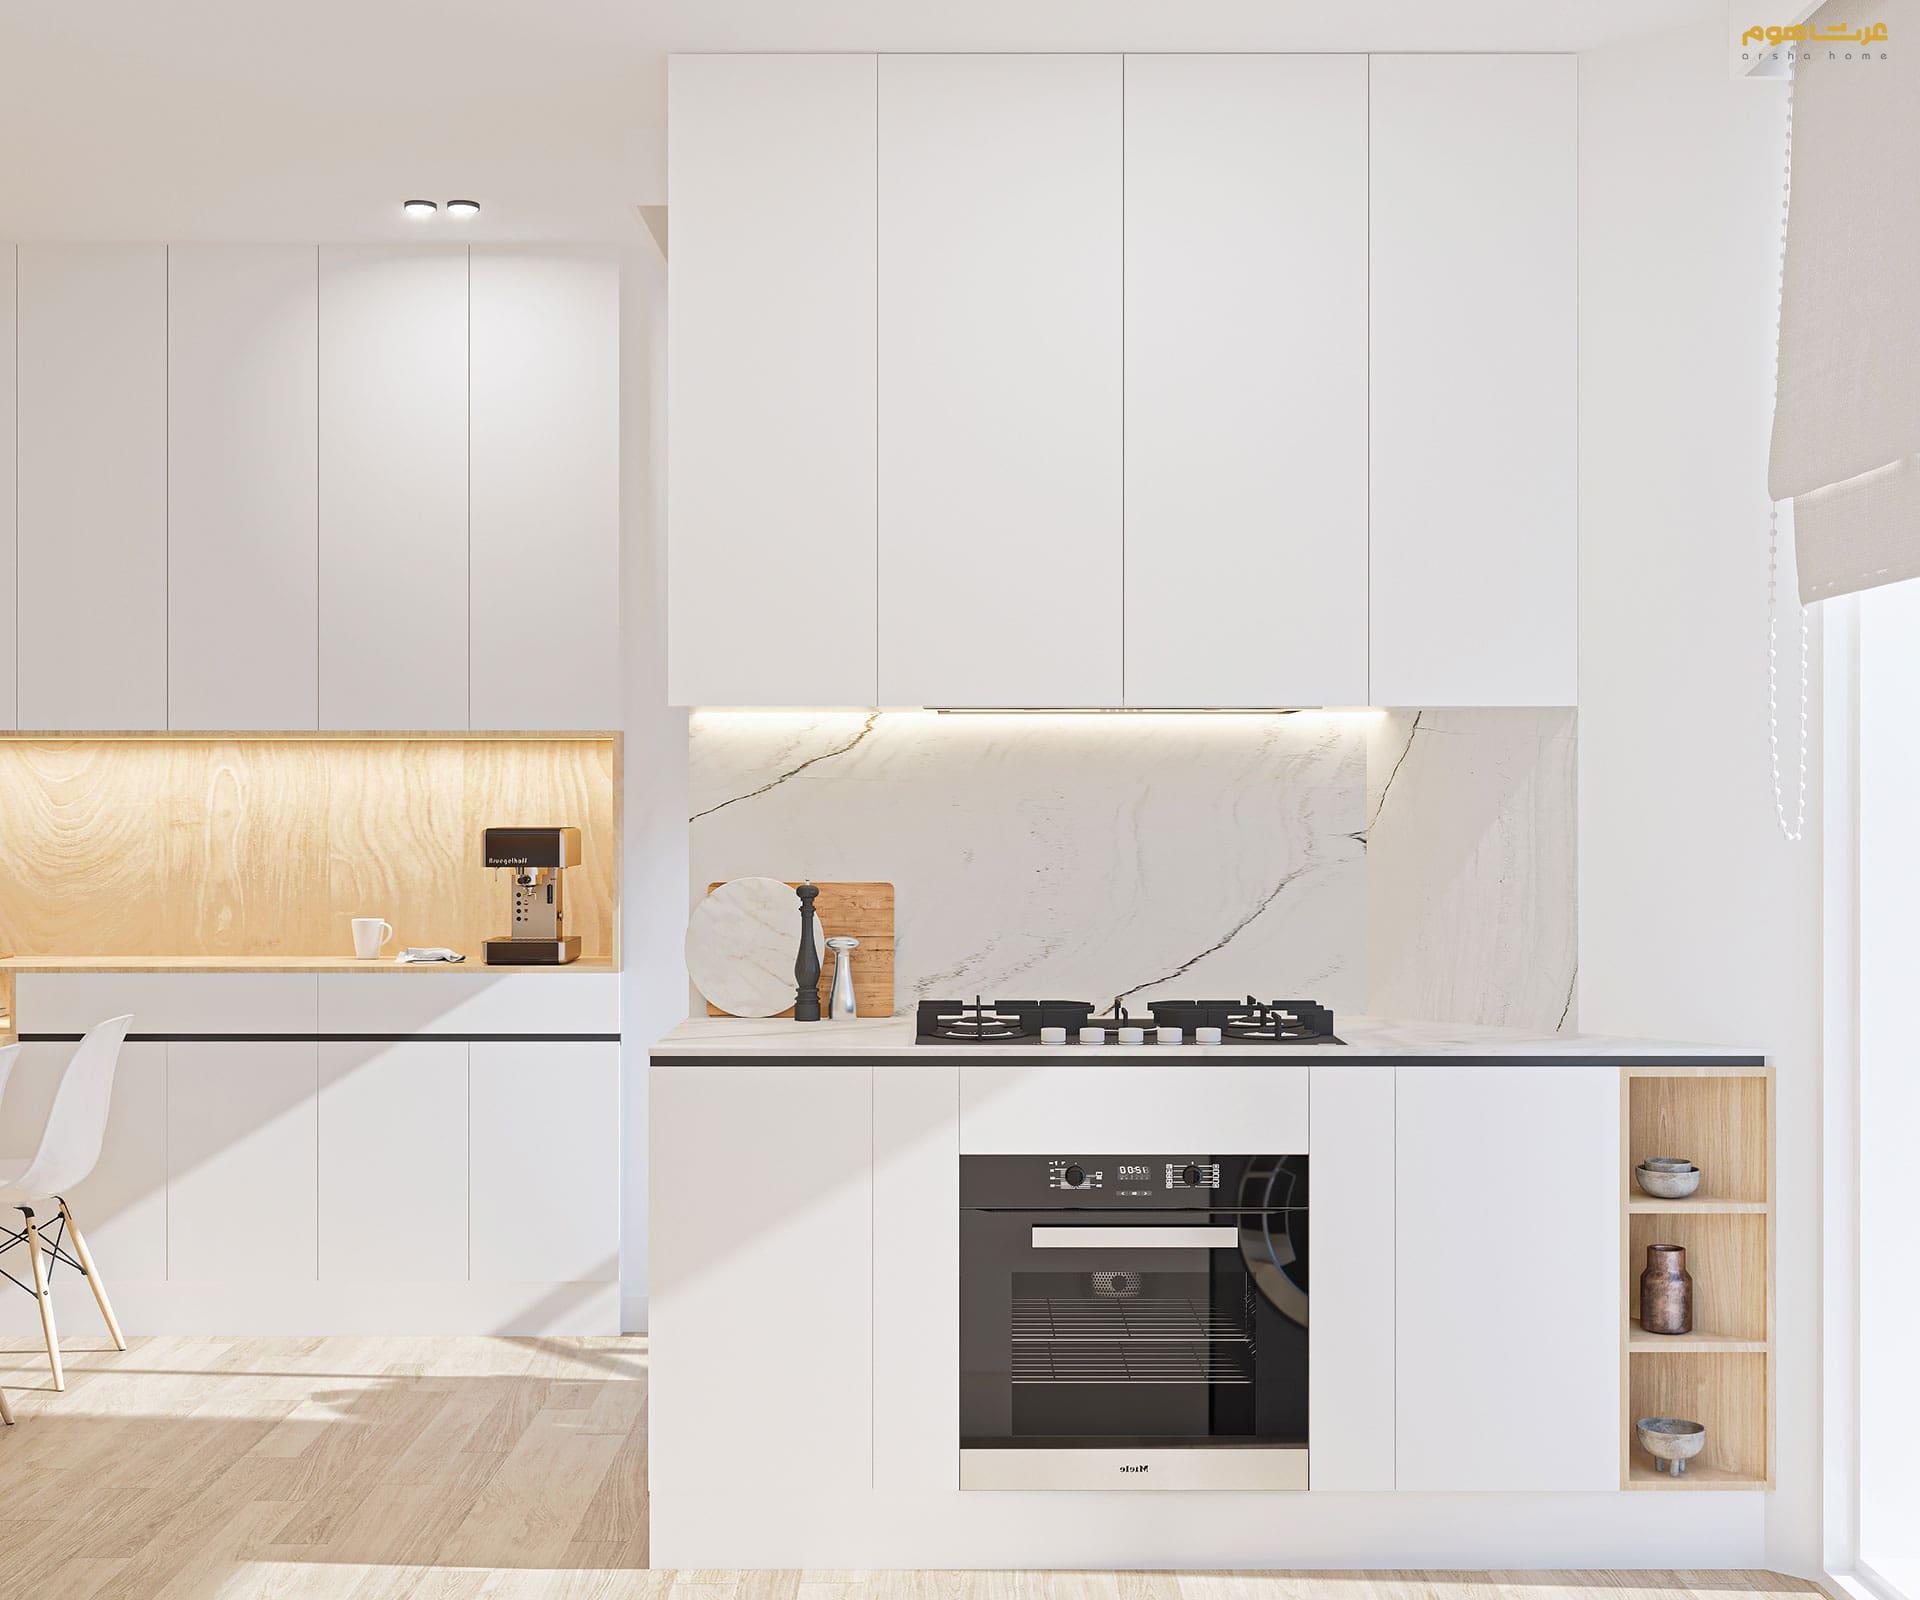 طراحی داخلی مدرن جنت آباد قادرمزی آشپزخانه سفید